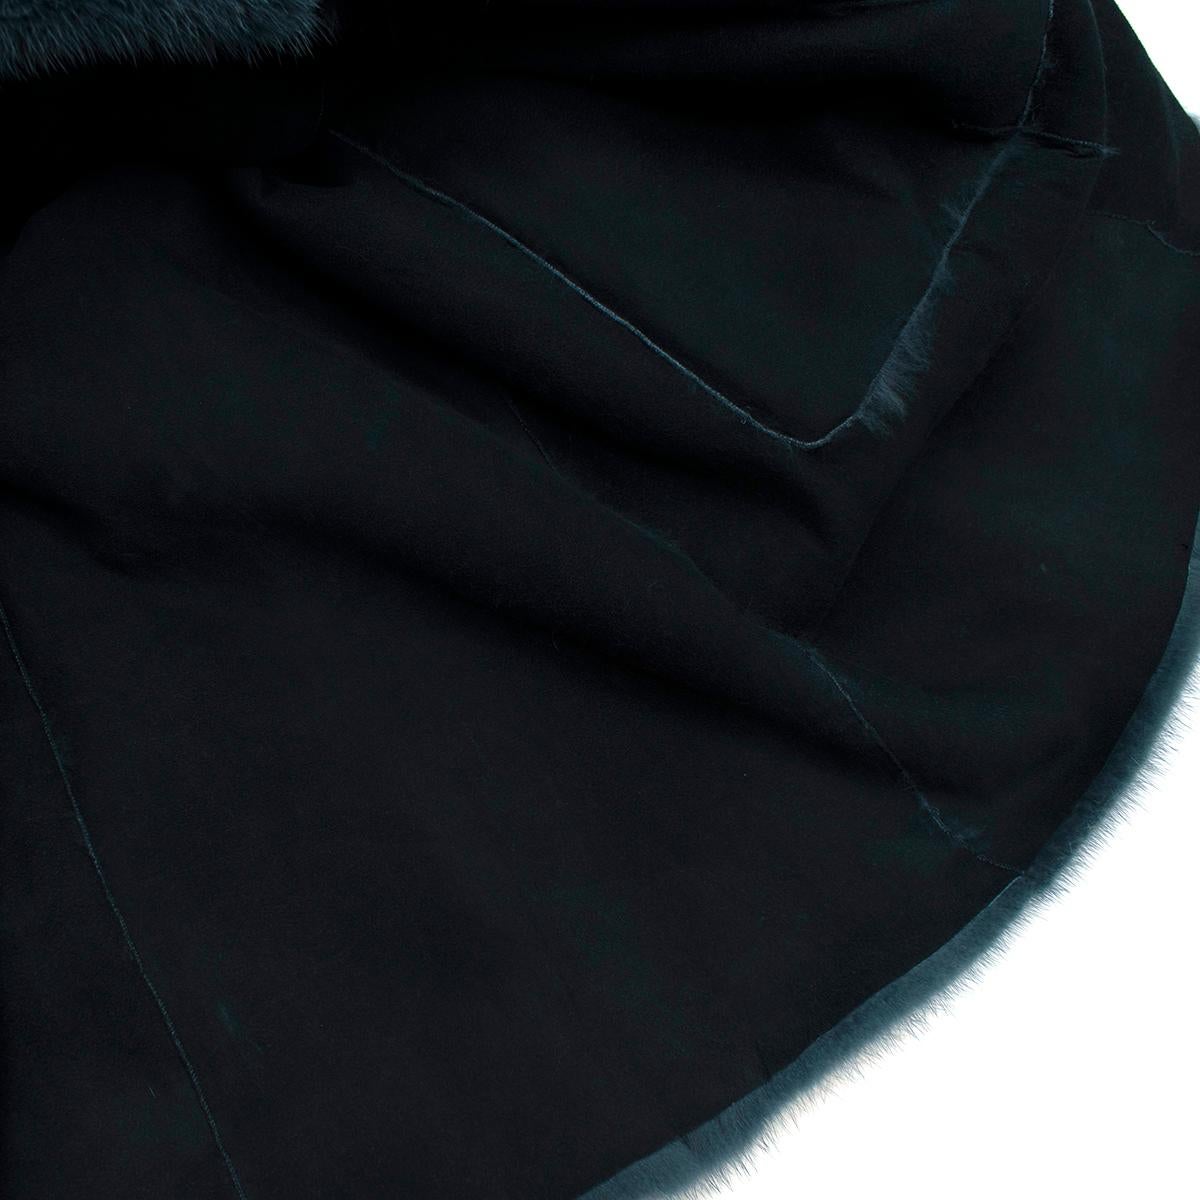 Marc Jacobs Blue Mink Fur Coat - Size 6/S For Sale 2